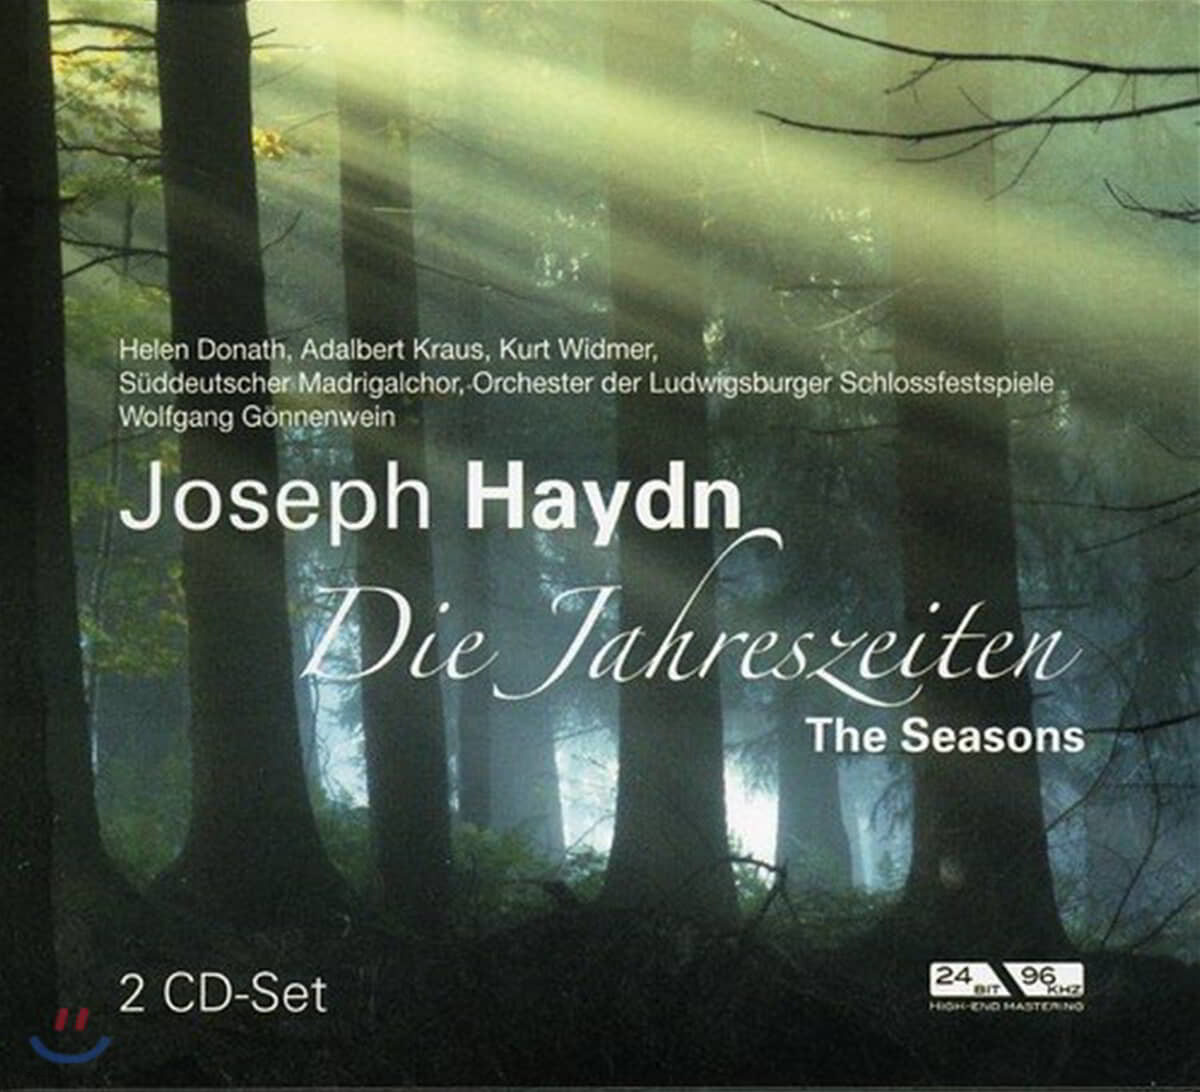 Wolfgang Gonnenwein 하이든: 사계 (Haydn: Die Jahreszeiten / The Seasons)